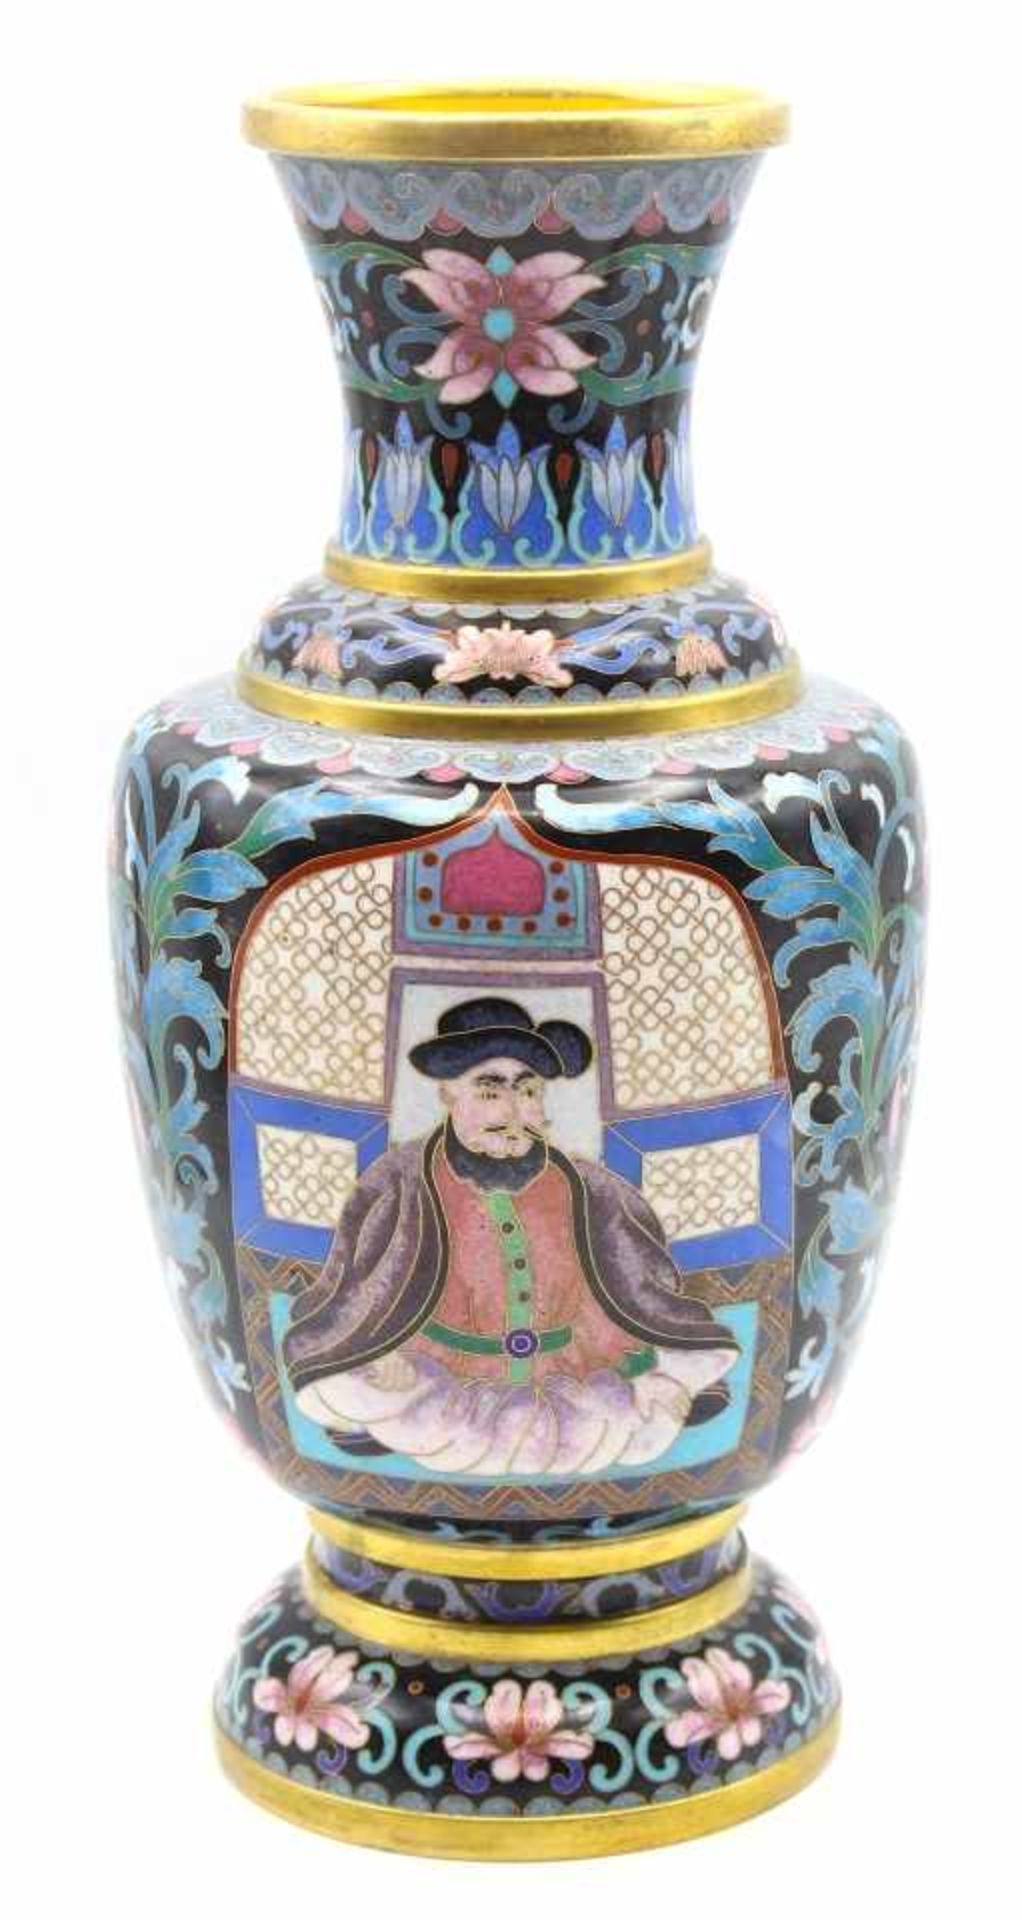 Cloisonné Vase - wohl China Messing emailliert, floral verziert, Schauseiten dekoriert mit